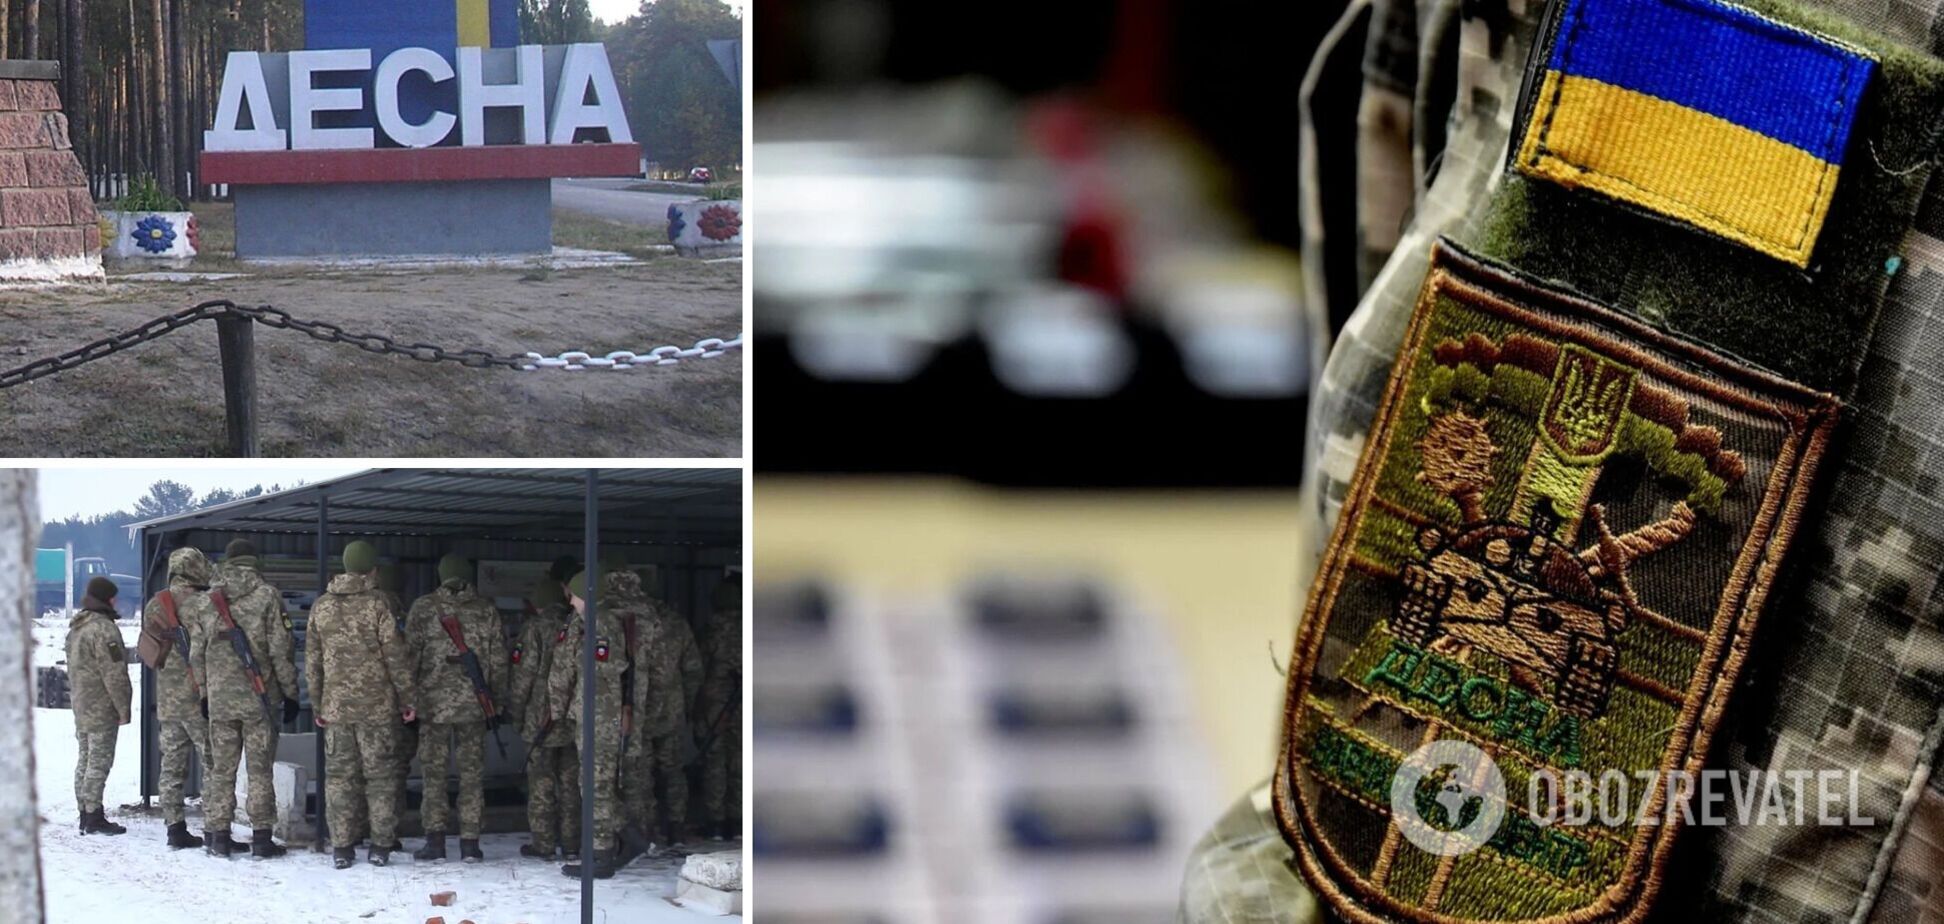 Сдетонировал снаряд: появились подробности гибели четырех военнослужащих в учебном центре 'Десна'